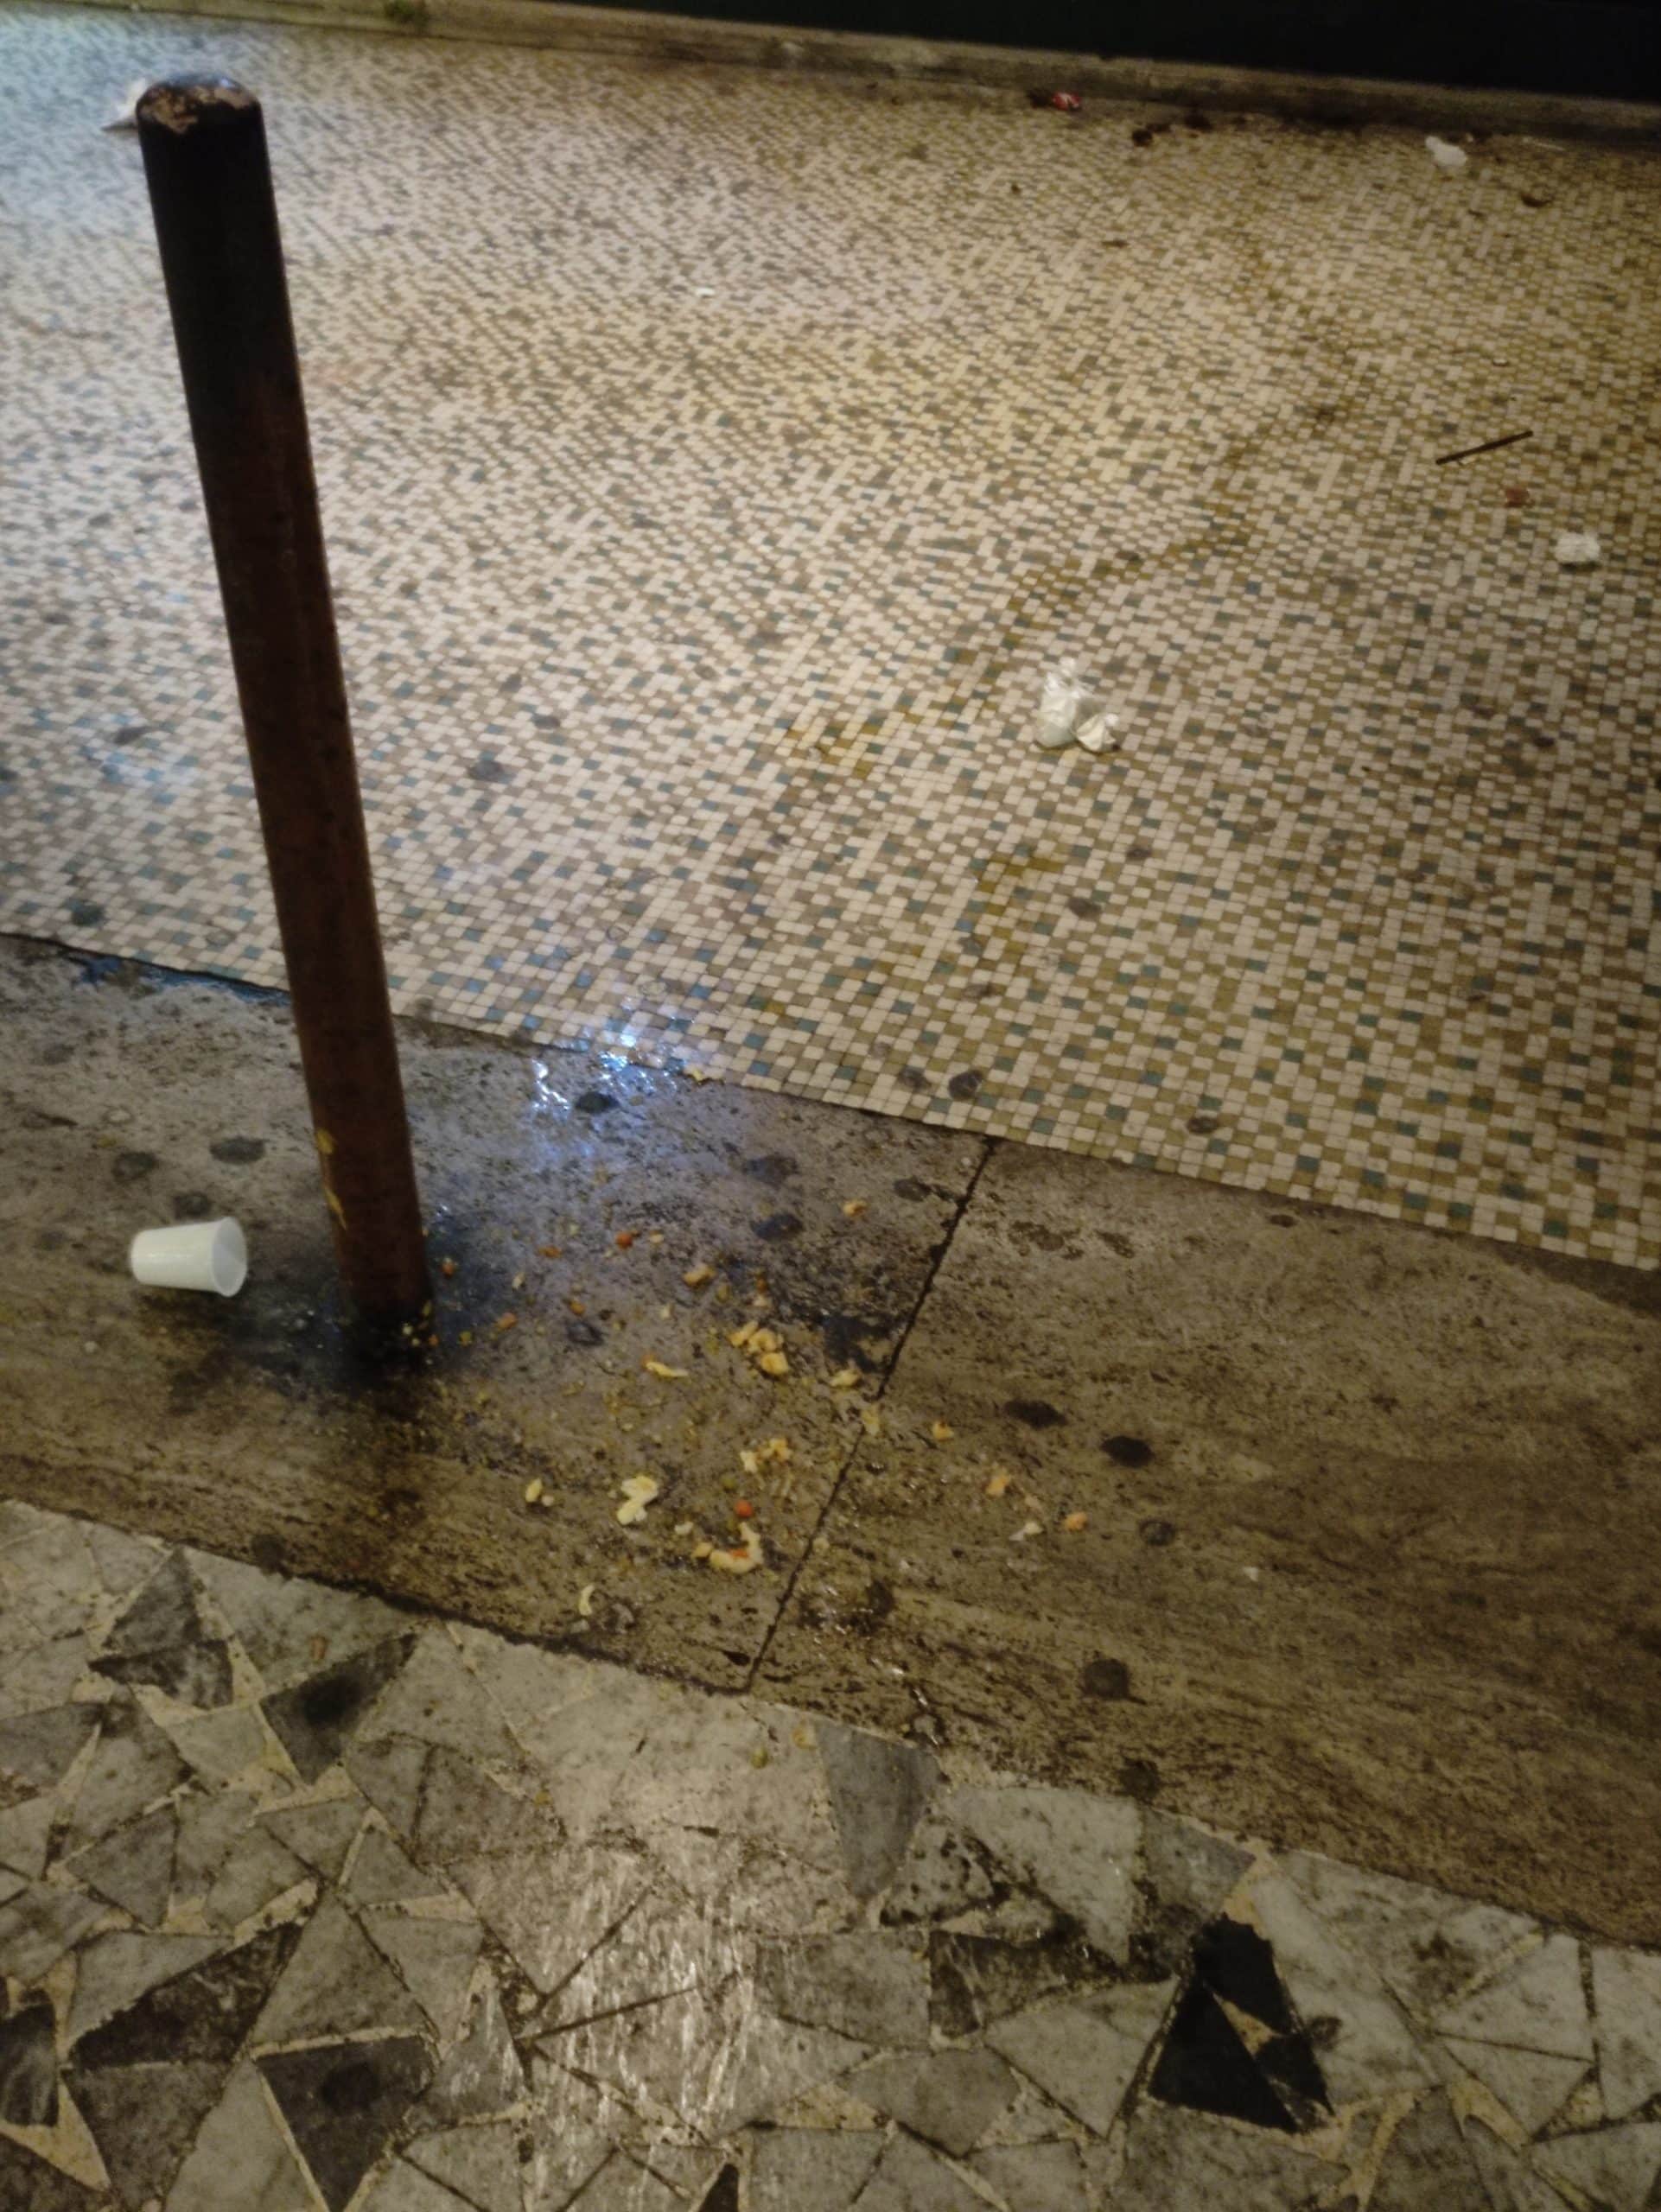 Movida selvaggia ad Avezzano centro: siringhe abbandonate, pozze di vomito, fiumi di urina e vetri rotti